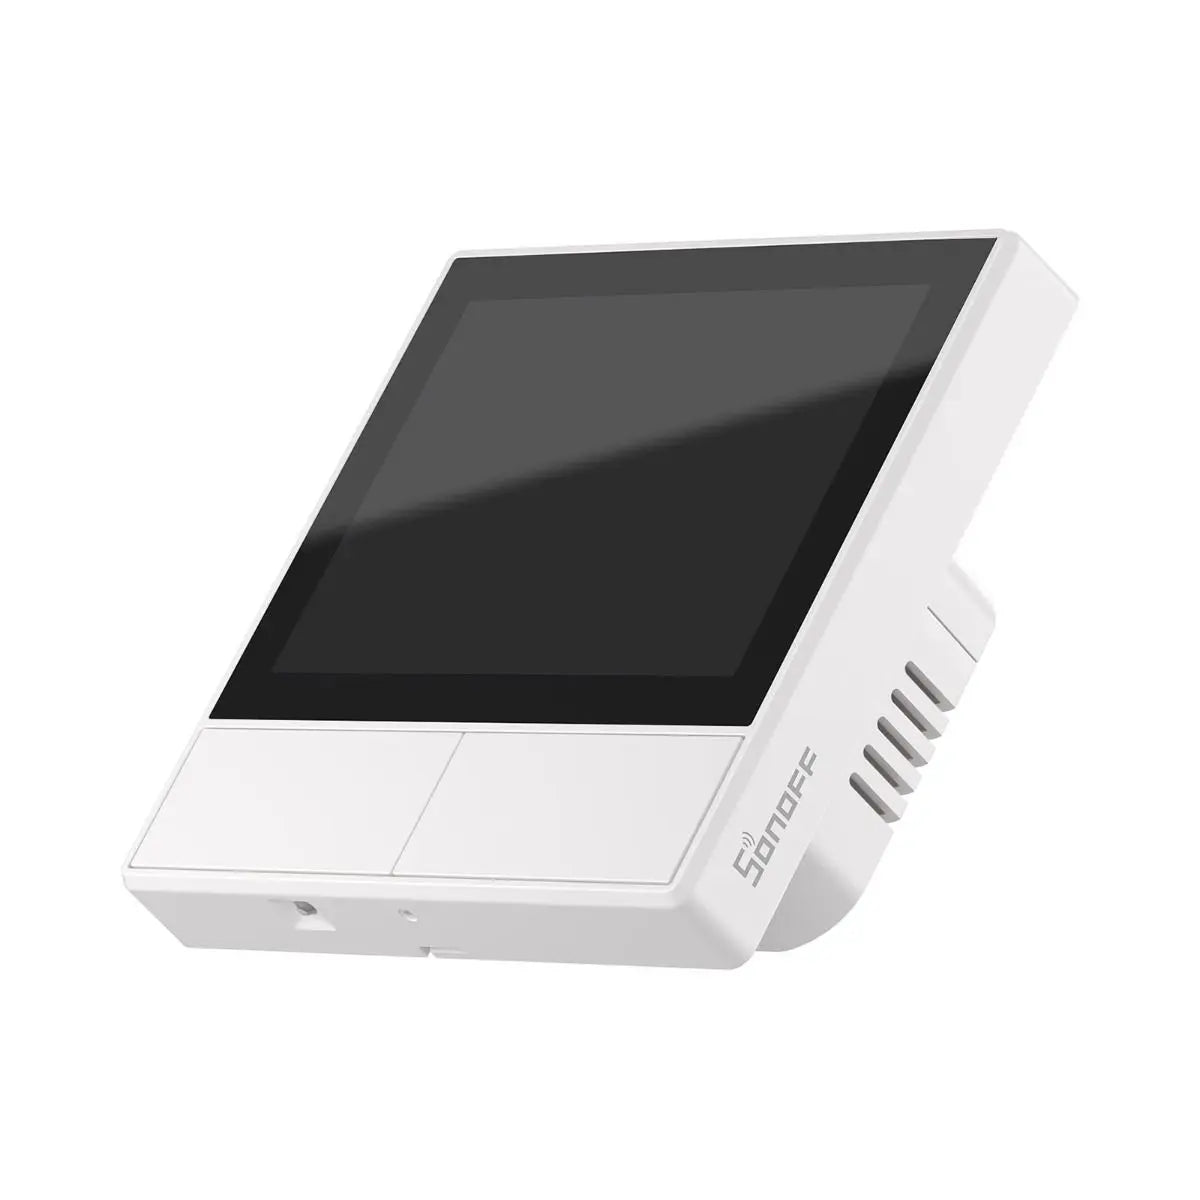 Sonoff NSPanel Ecrã Multifunções Inteligente wifi branco: Compatível com uma vasta gama de dispositivos inteligentes